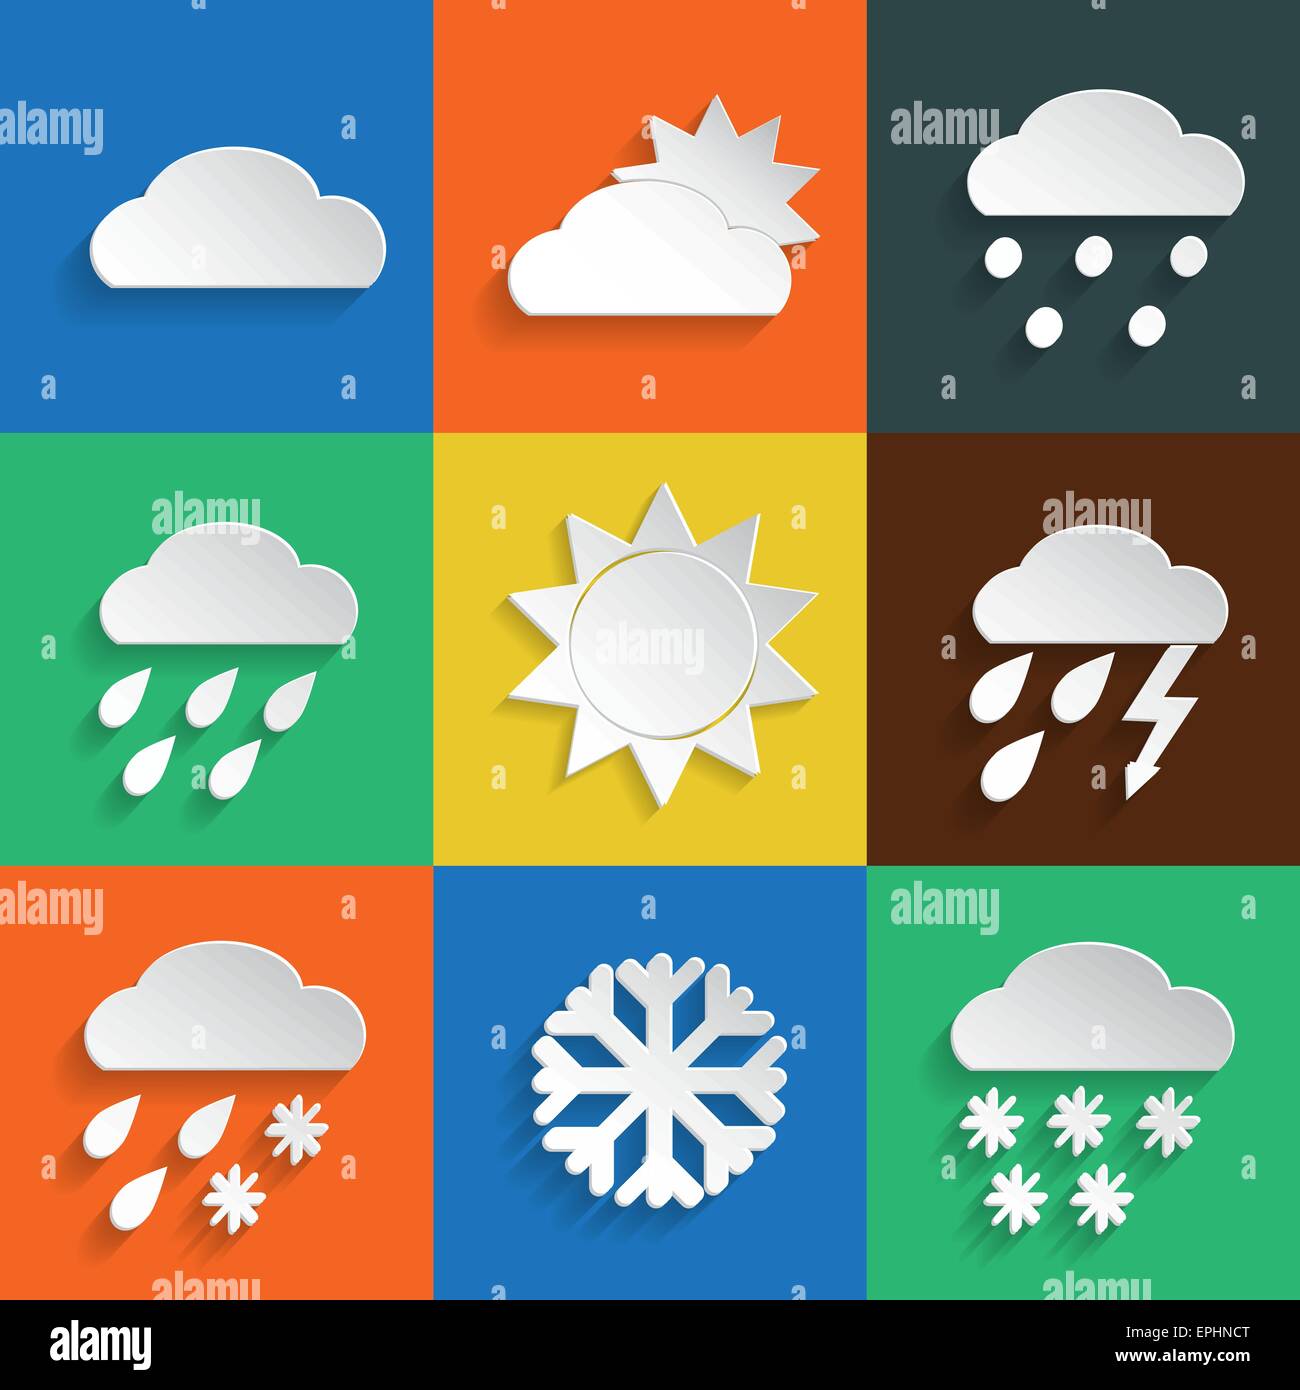 Wetter-Icons im Papier Stil auf farbigen Hintergründen. Vektor-Hintergrund oder separate Elemente Stock Vektor